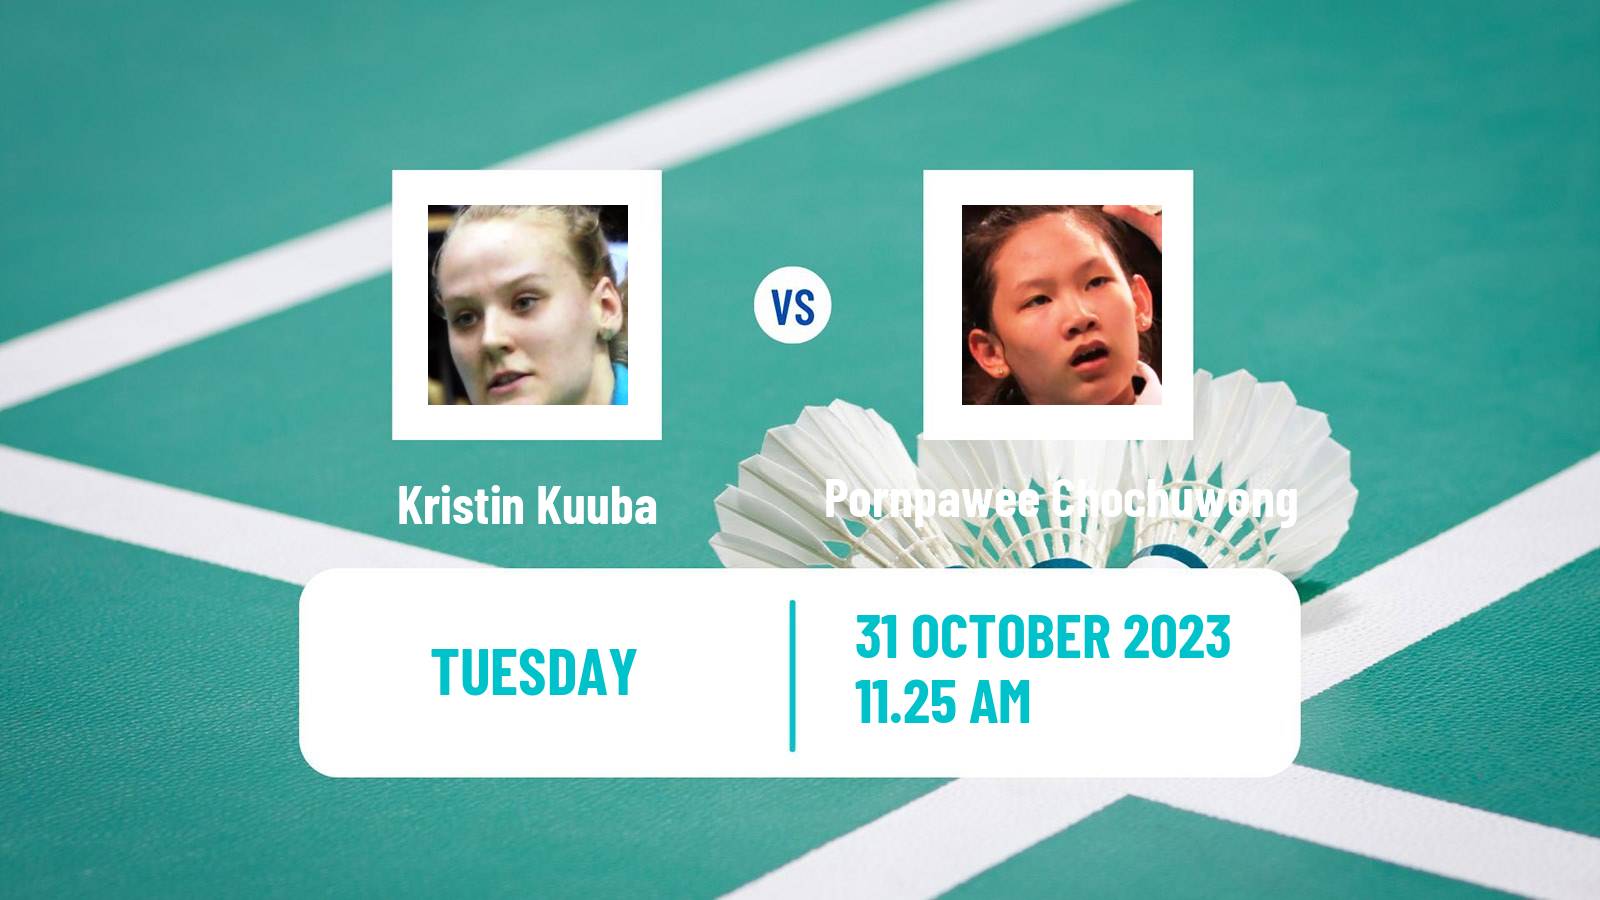 Badminton BWF World Tour Hylo Open Women Kristin Kuuba - Pornpawee Chochuwong